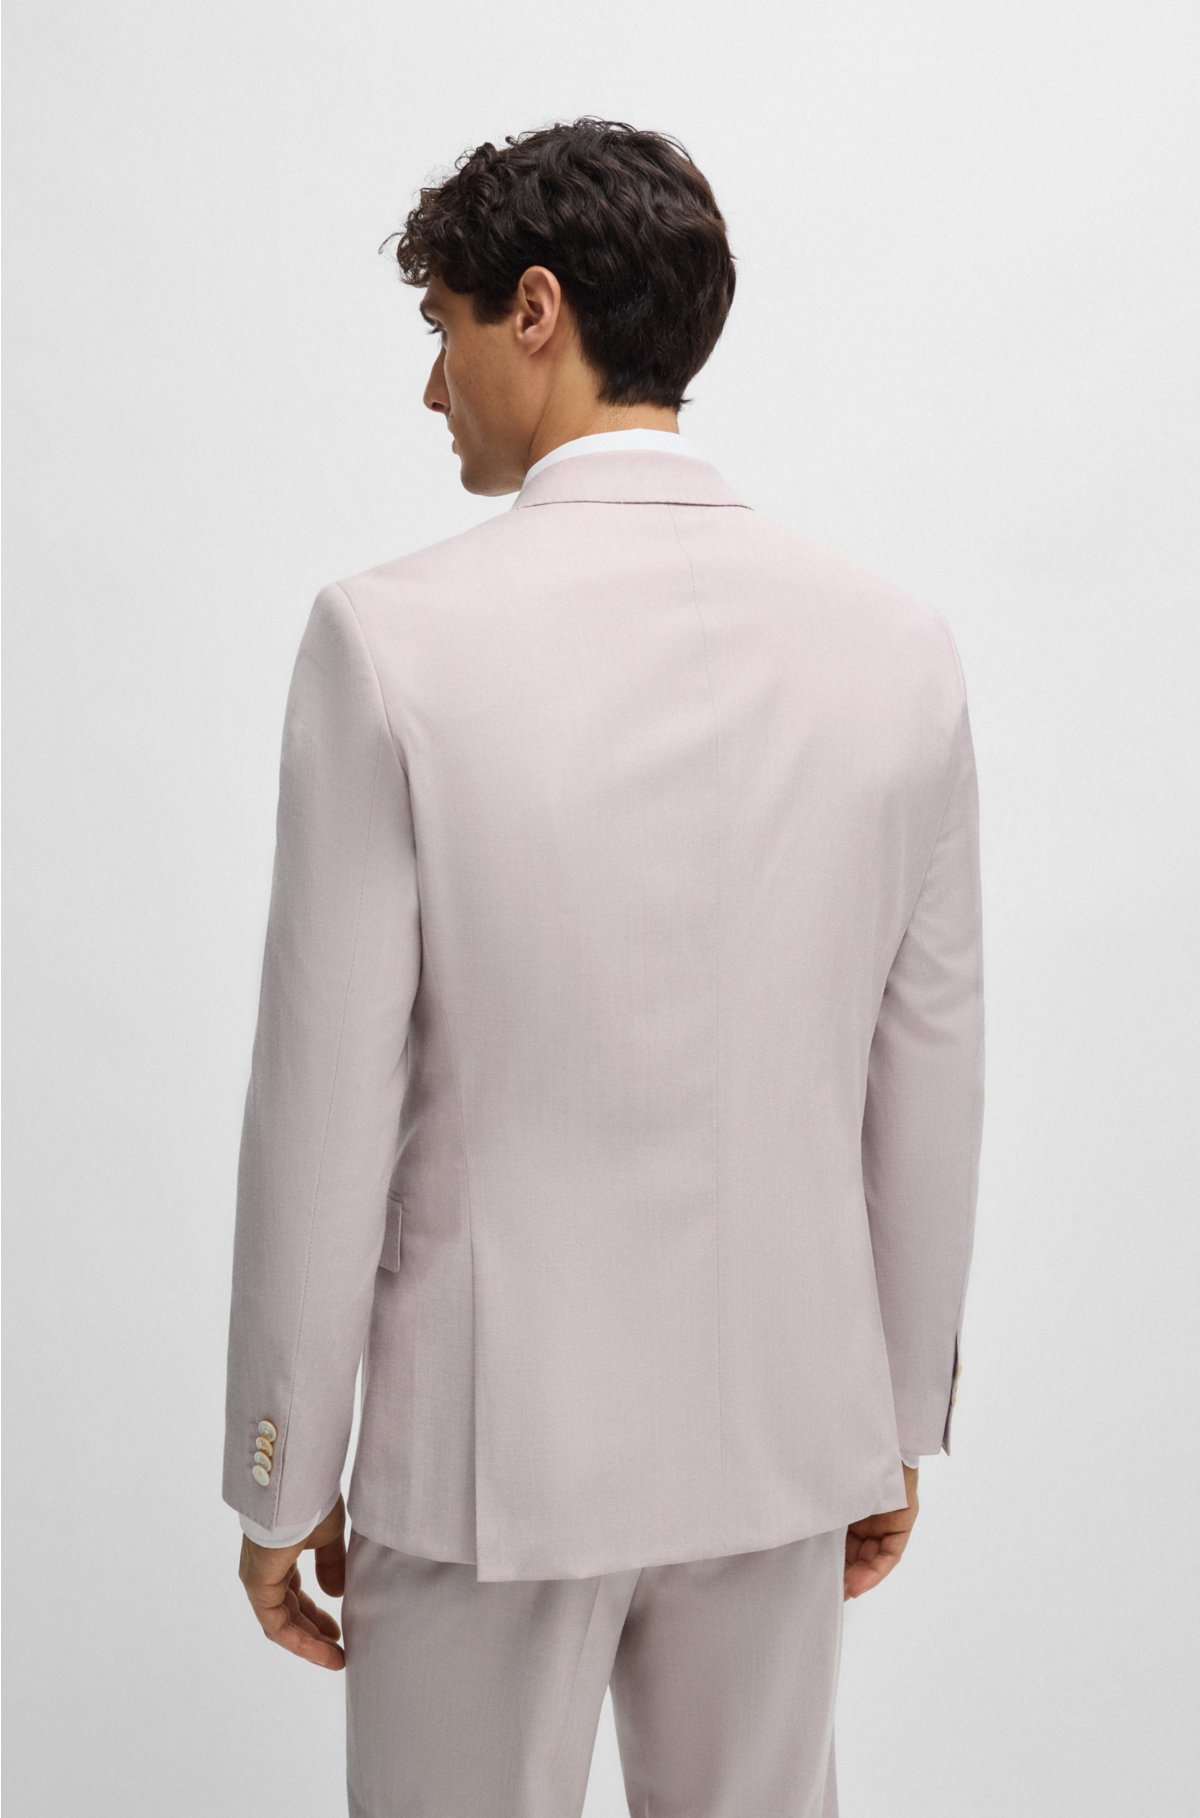 Slim-fit suit in a melange wool blend, light pink